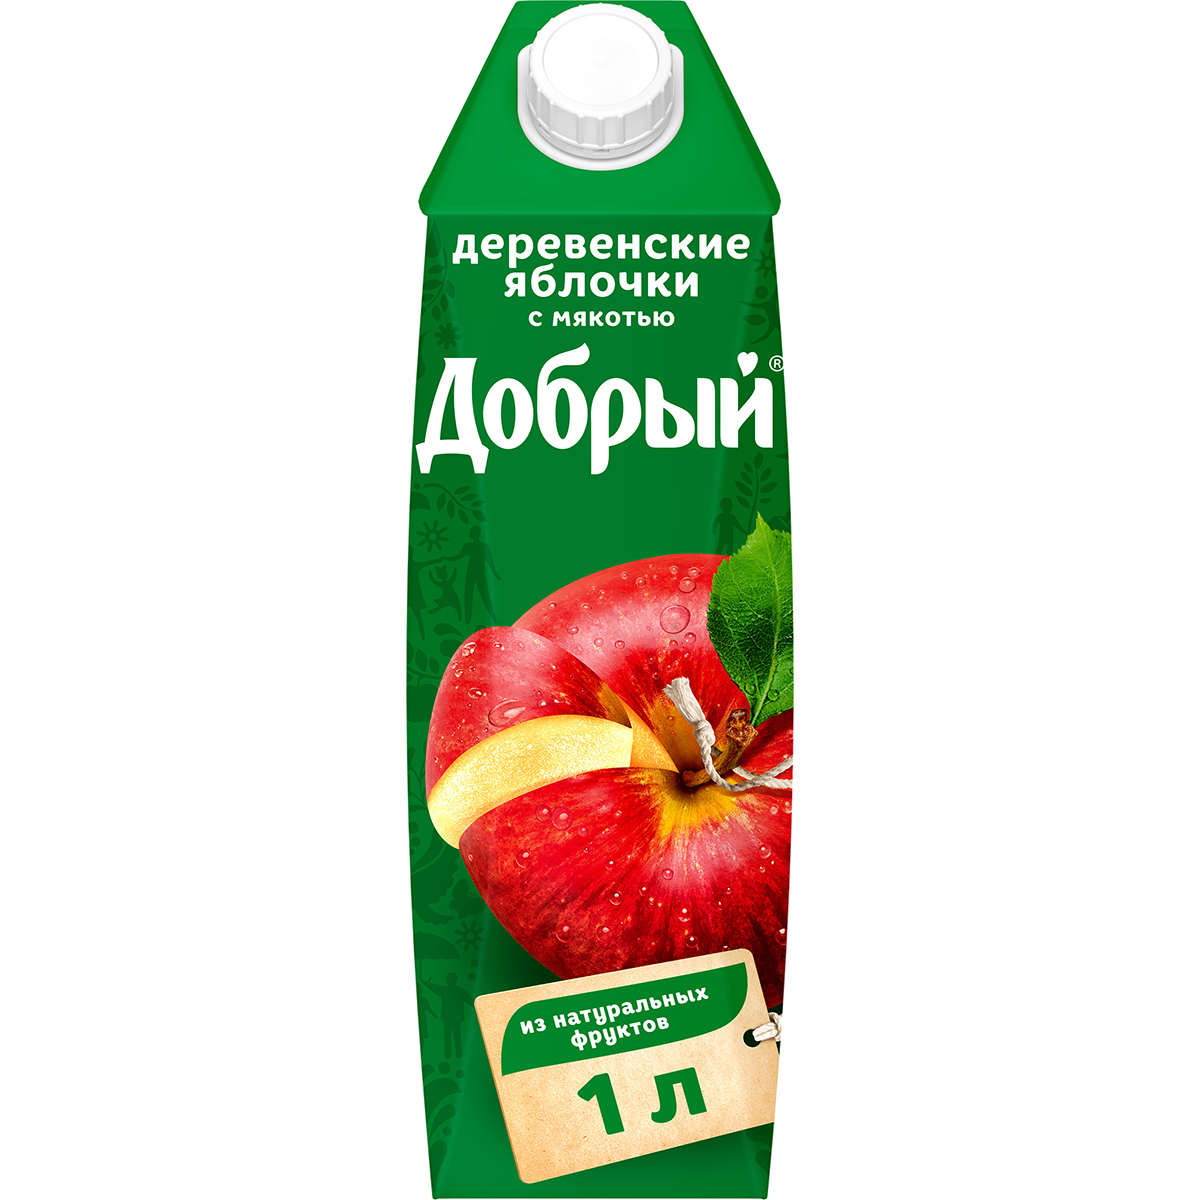 Нектар Добрый Деревенские яблочки с мякотью 1 л нектар добрый деревенские яблочки 1 л